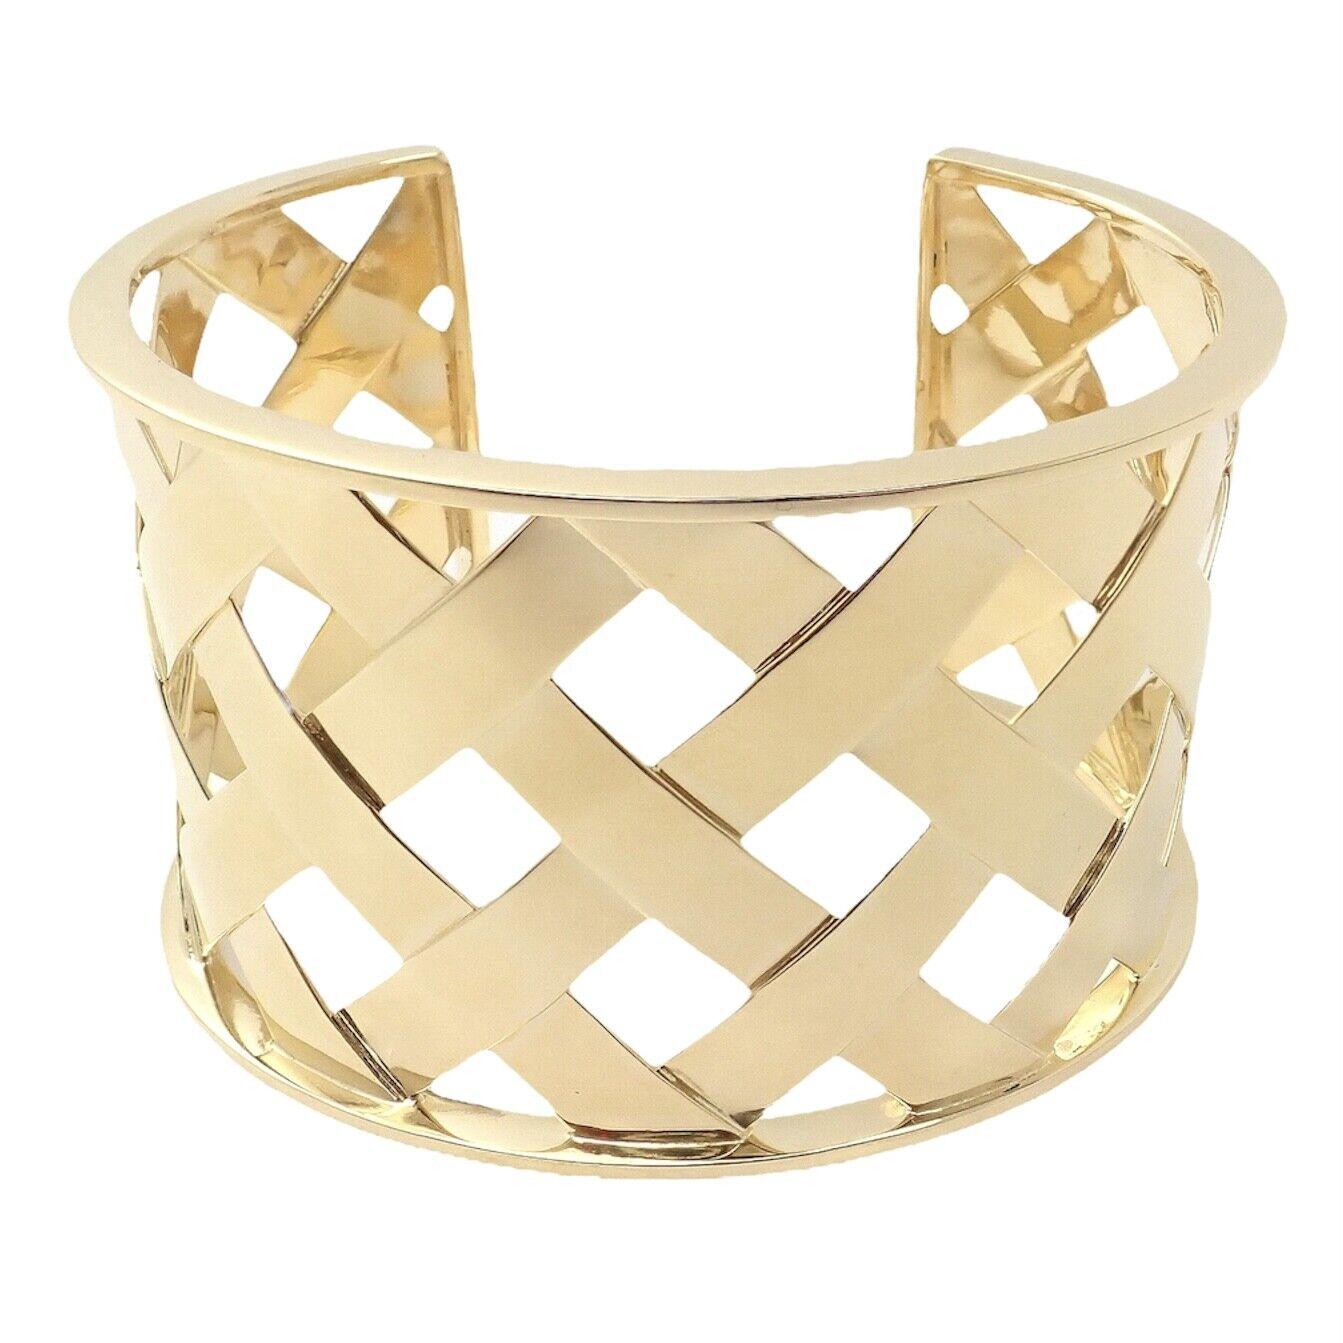 18k Yellow Gold Criss Cross Wide Cuff Bangle Bracelet by Verdura. 
Details: 
Weight: 66.3 grams
Width: 1.5